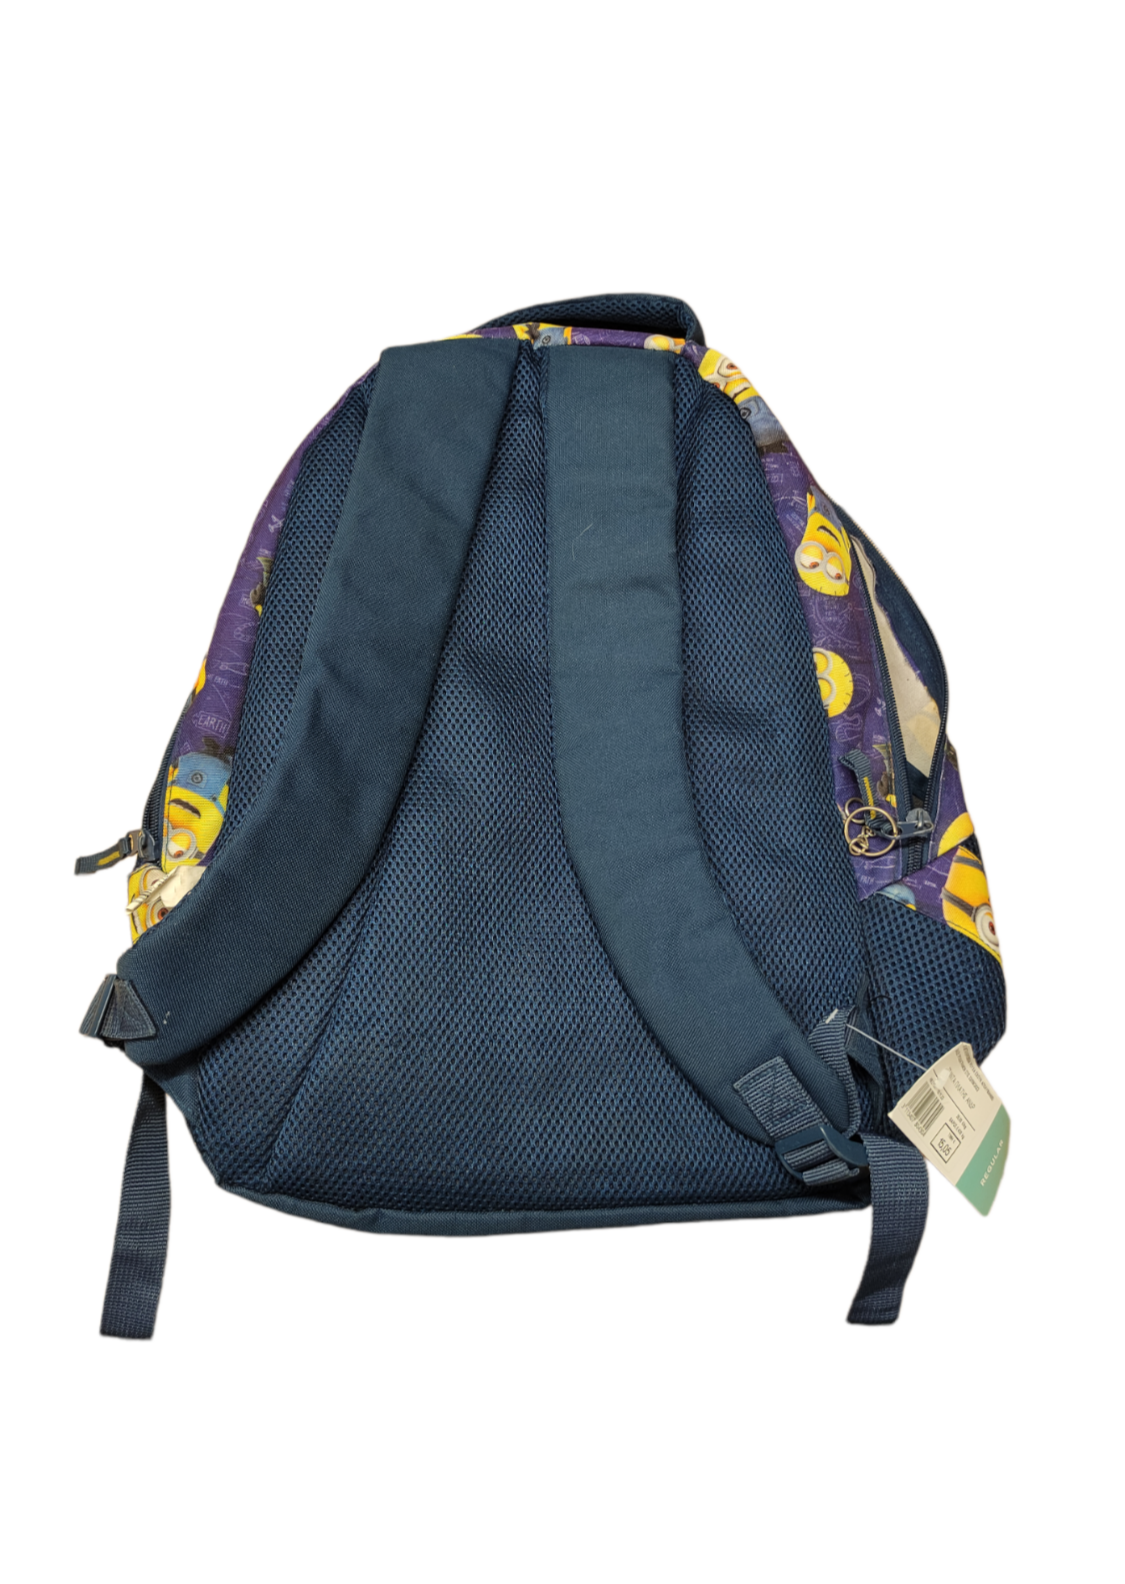 Τσάντα (Backpack) DESPECABLE ME σε Μπλε - Μωβ χρώματα